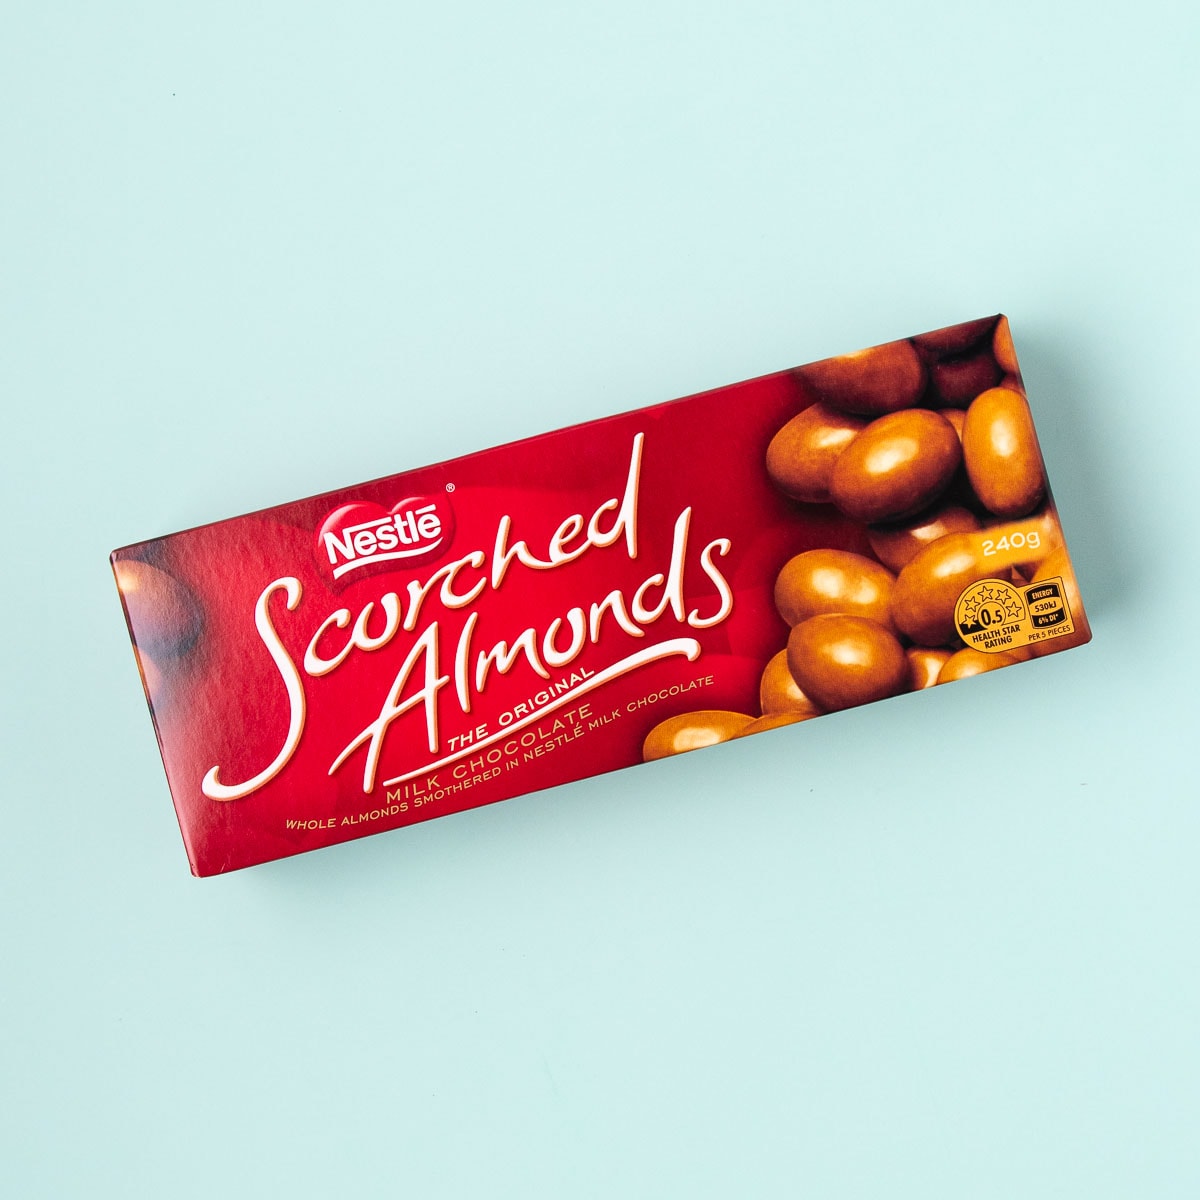 A box of Nestlé scorched almonds on a mint green background.